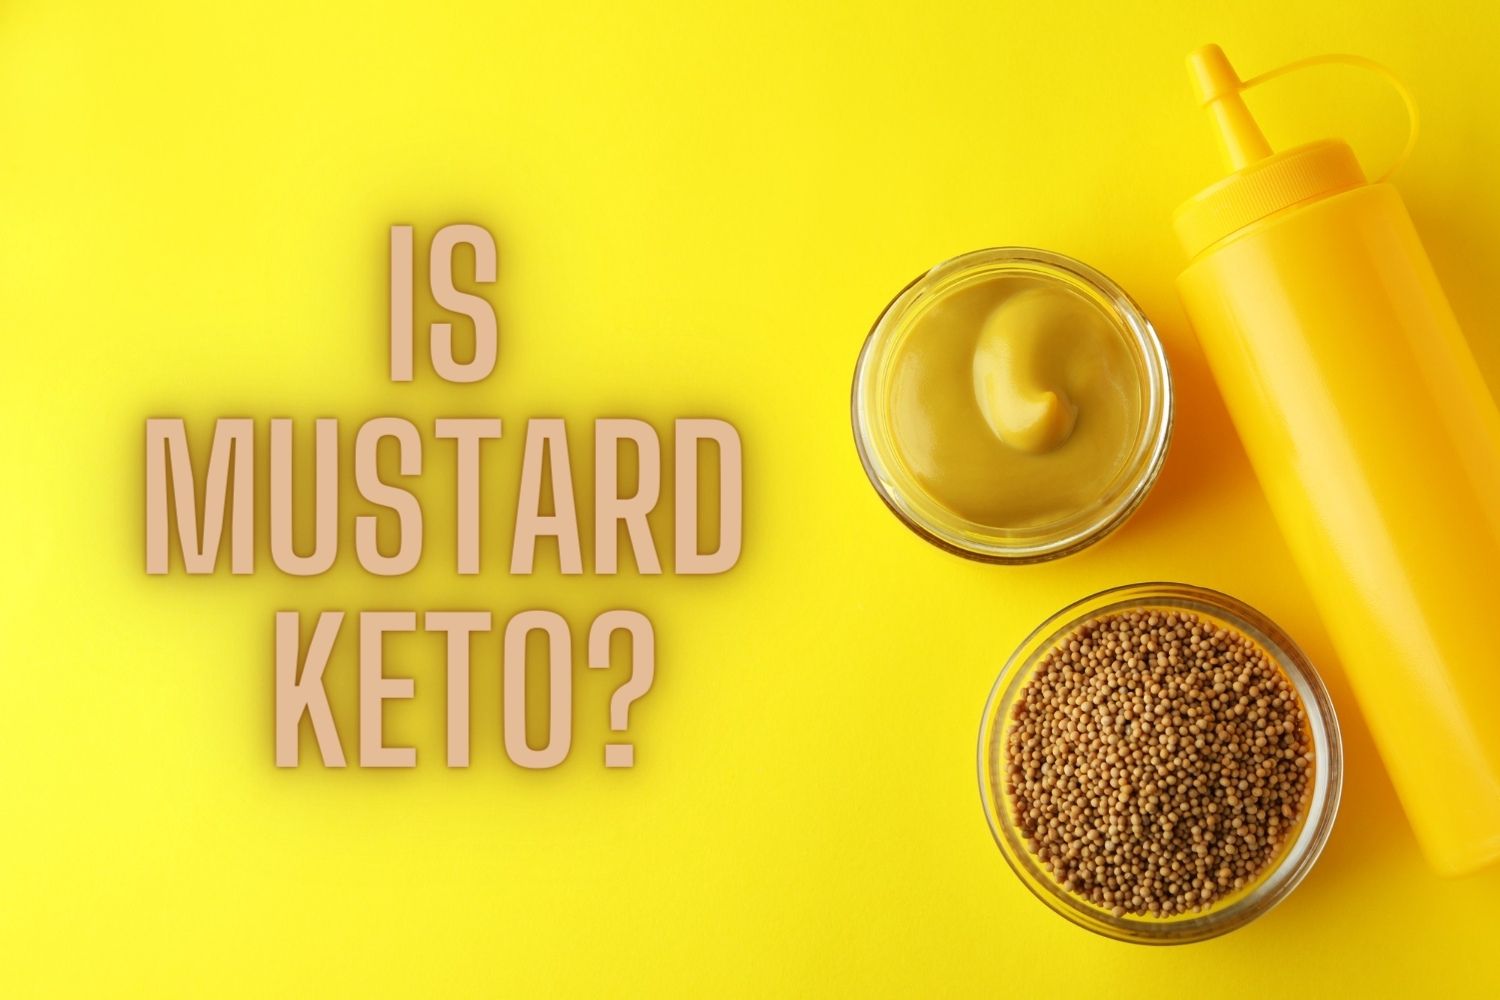 Is Mustard Keto